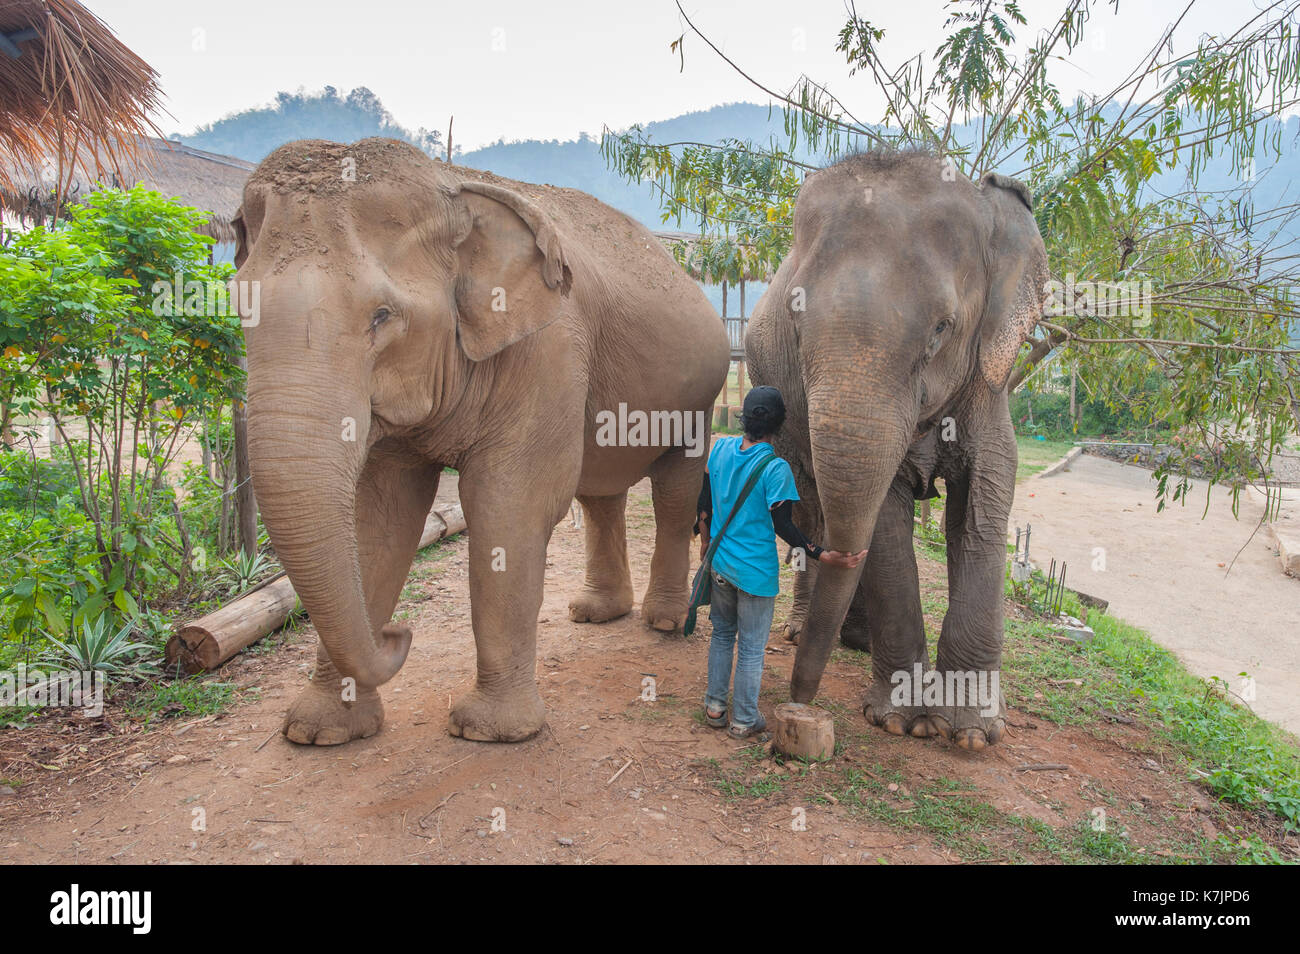 Elefanti asiatici e caregiviere in un centro di salvataggio e riabilitazione degli elefanti. Elephant Nature Park, Chiang mai, Thailandia, Sud-est asiatico Foto Stock